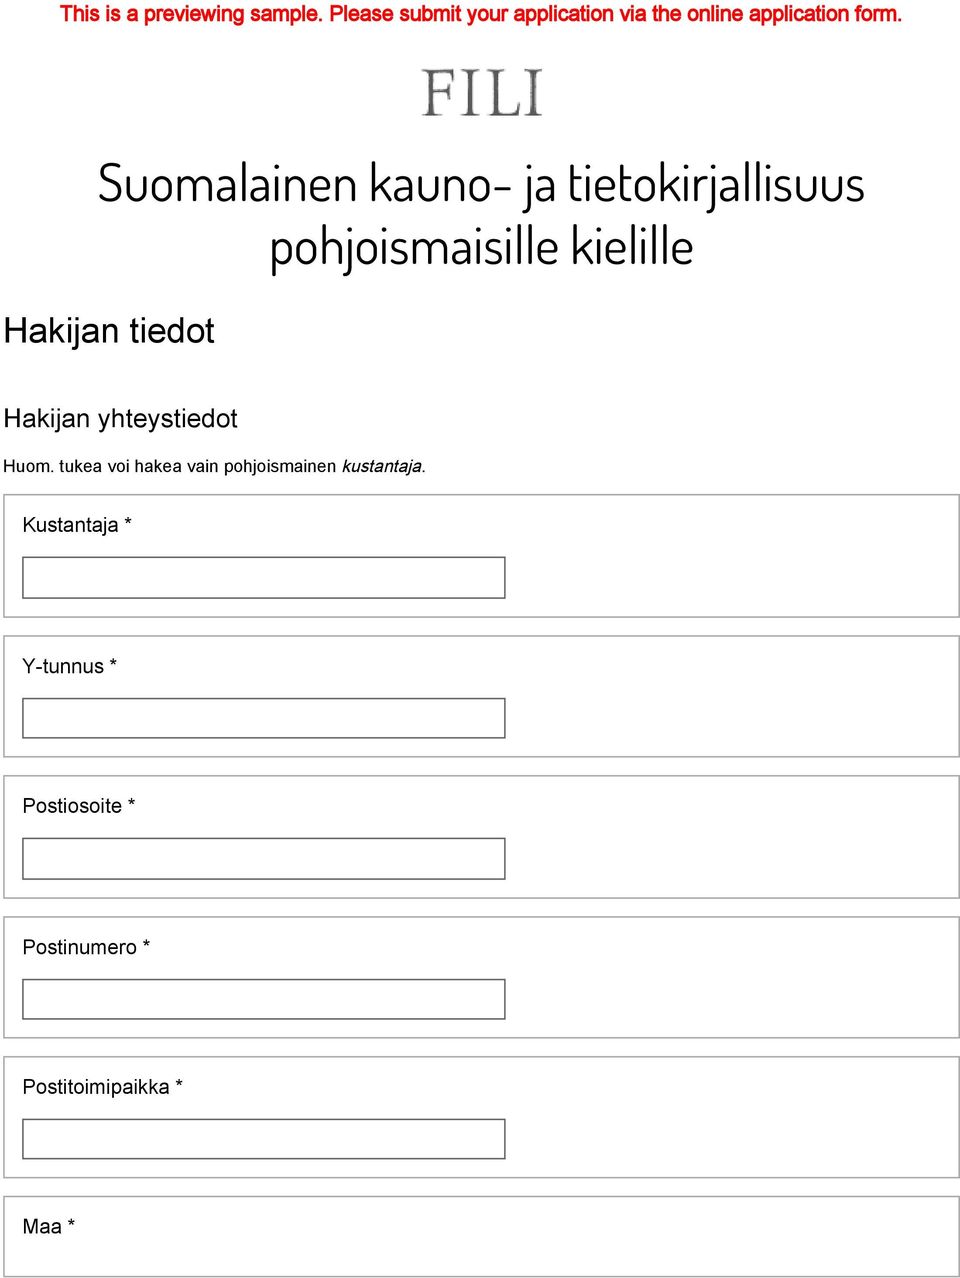 Suomalainen kauno- ja tietokirjallisuus pohjoismaisille kielille Hakijan tiedot